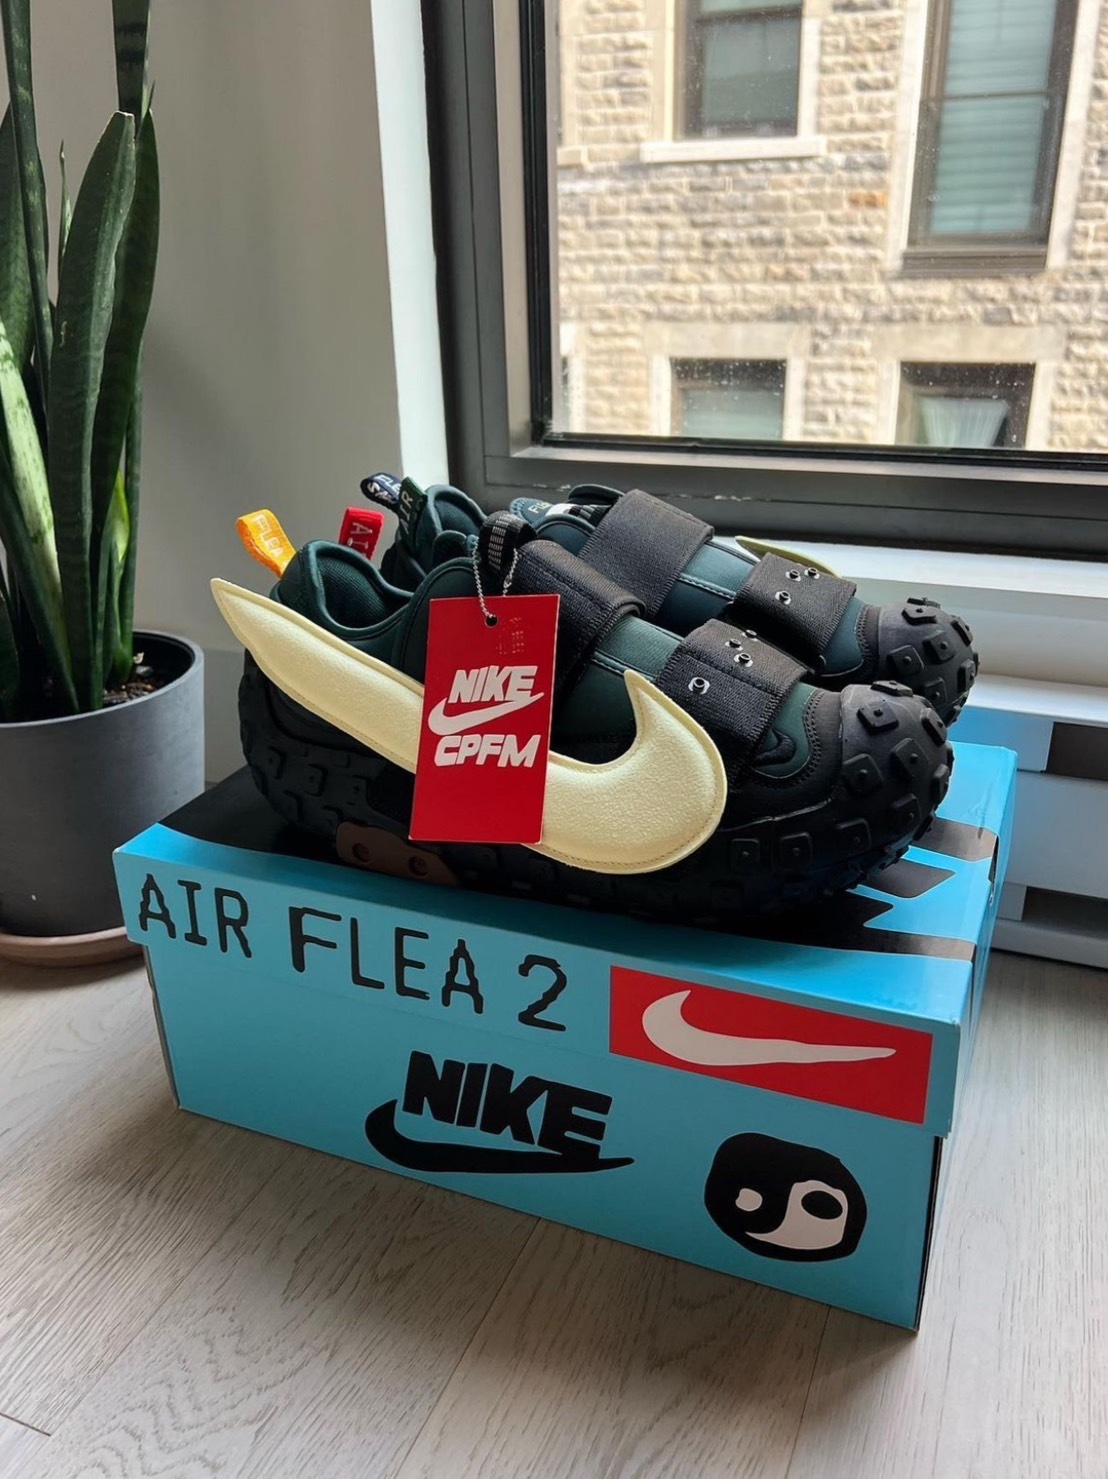 Nike Air Flea 2 x CPFM【DV7164-300】